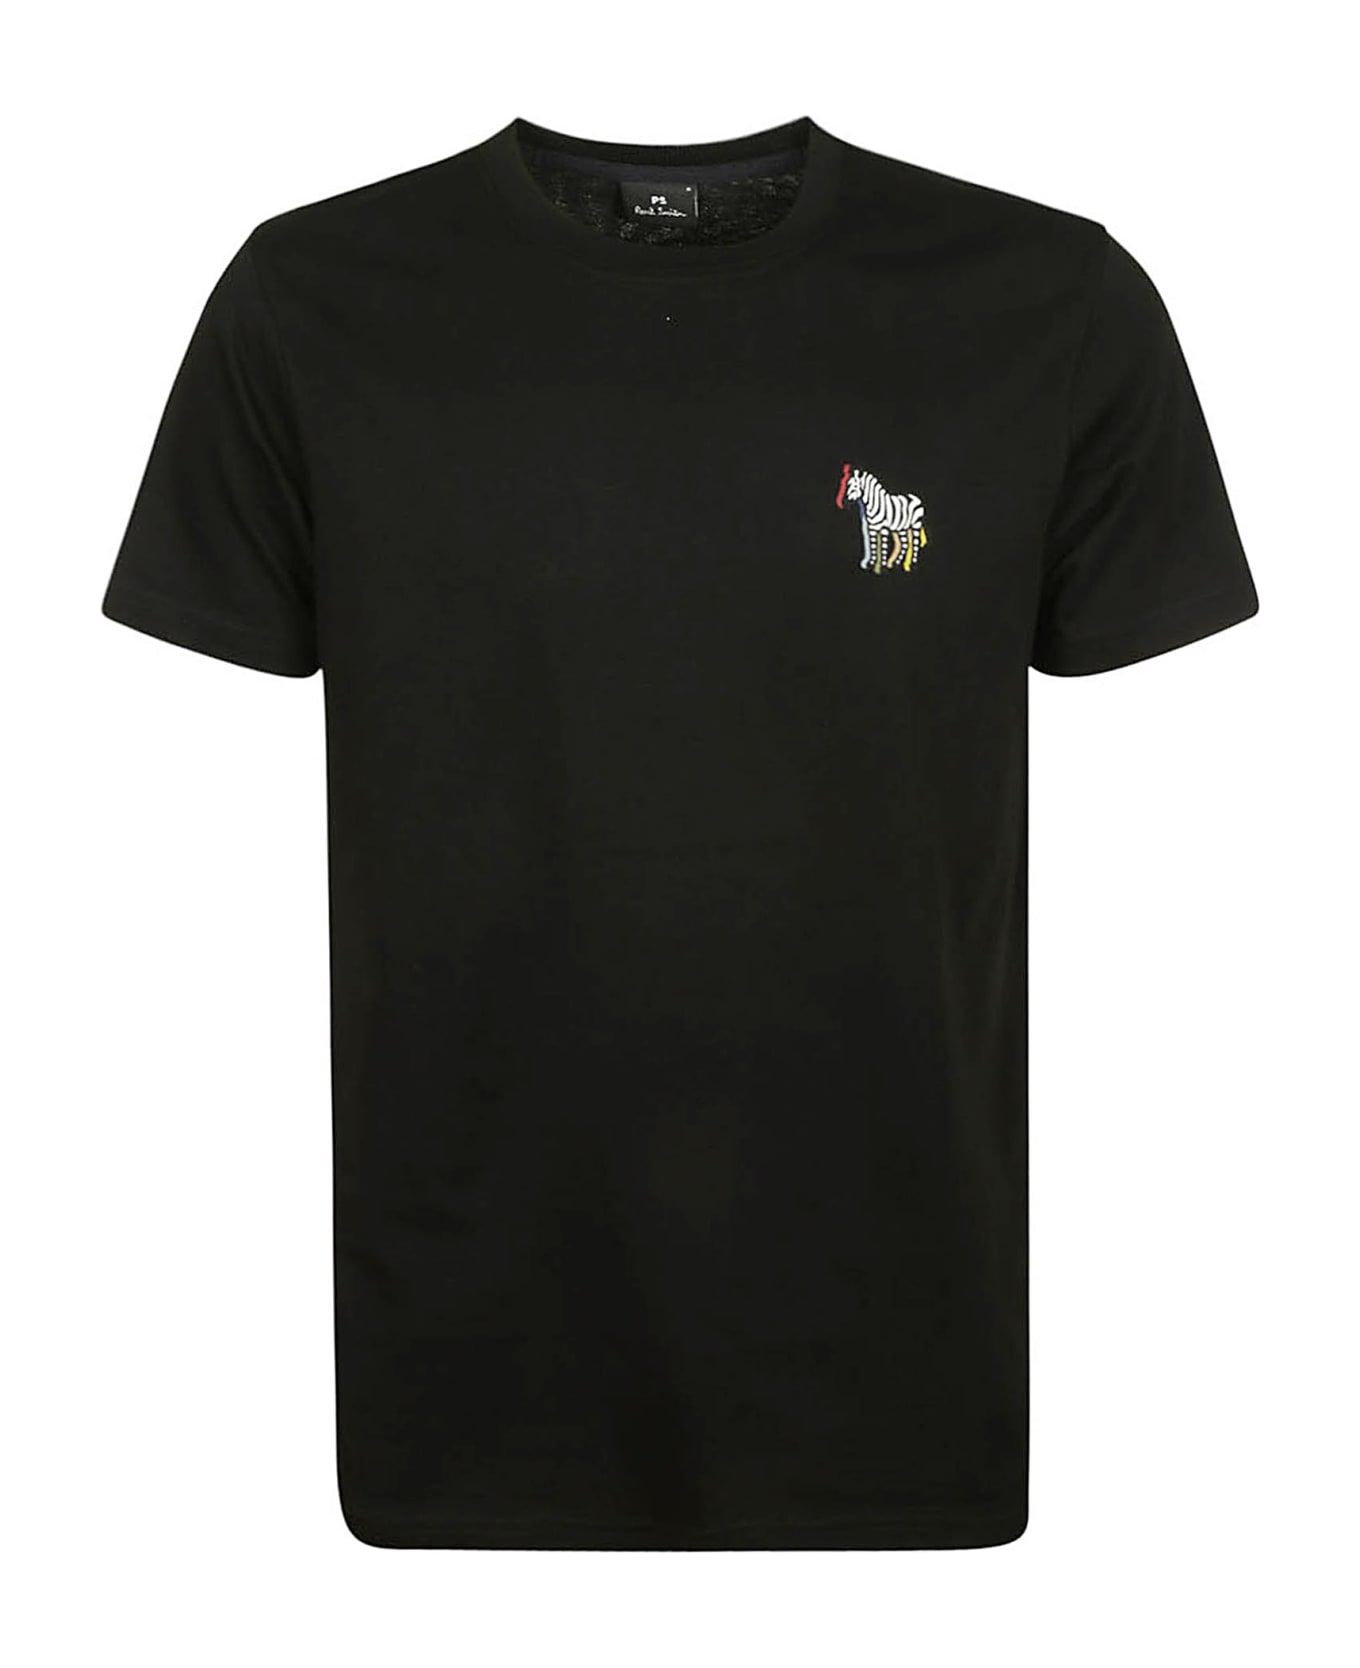 Paul Smith Slim Fit T-shirt B&w Zebra - Black